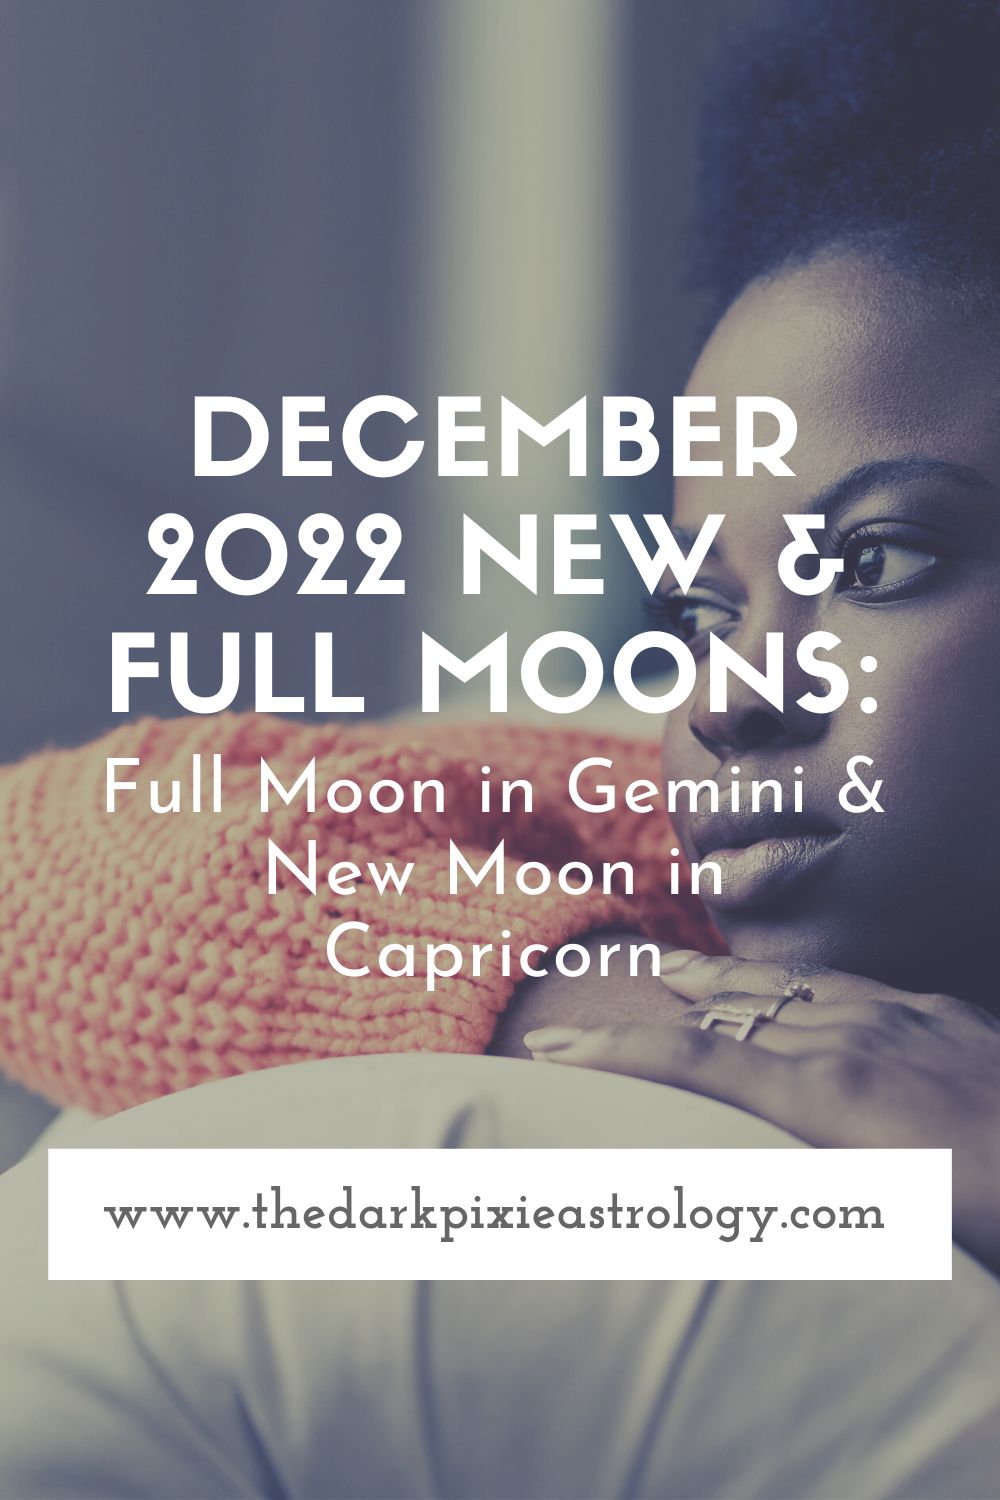 December 2022 New & Full Moons: Full Moon in Gemini & New Moon in Capricorn - The Dark Pixie Astrology